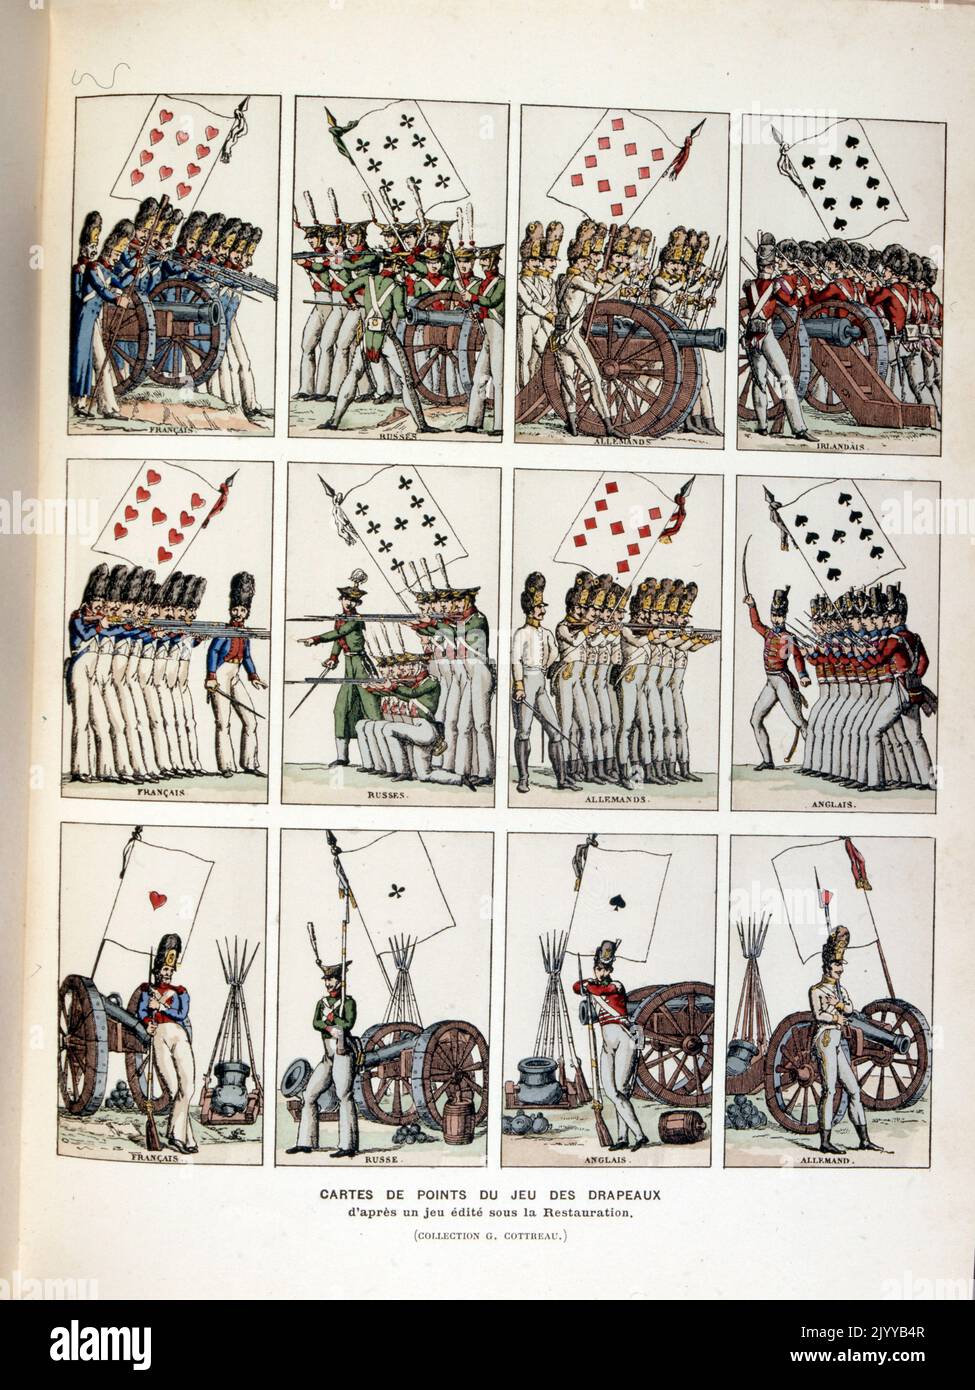 Illustration colorée de cartes à jouer représentant des figures du jeu Drapaces. Banque D'Images